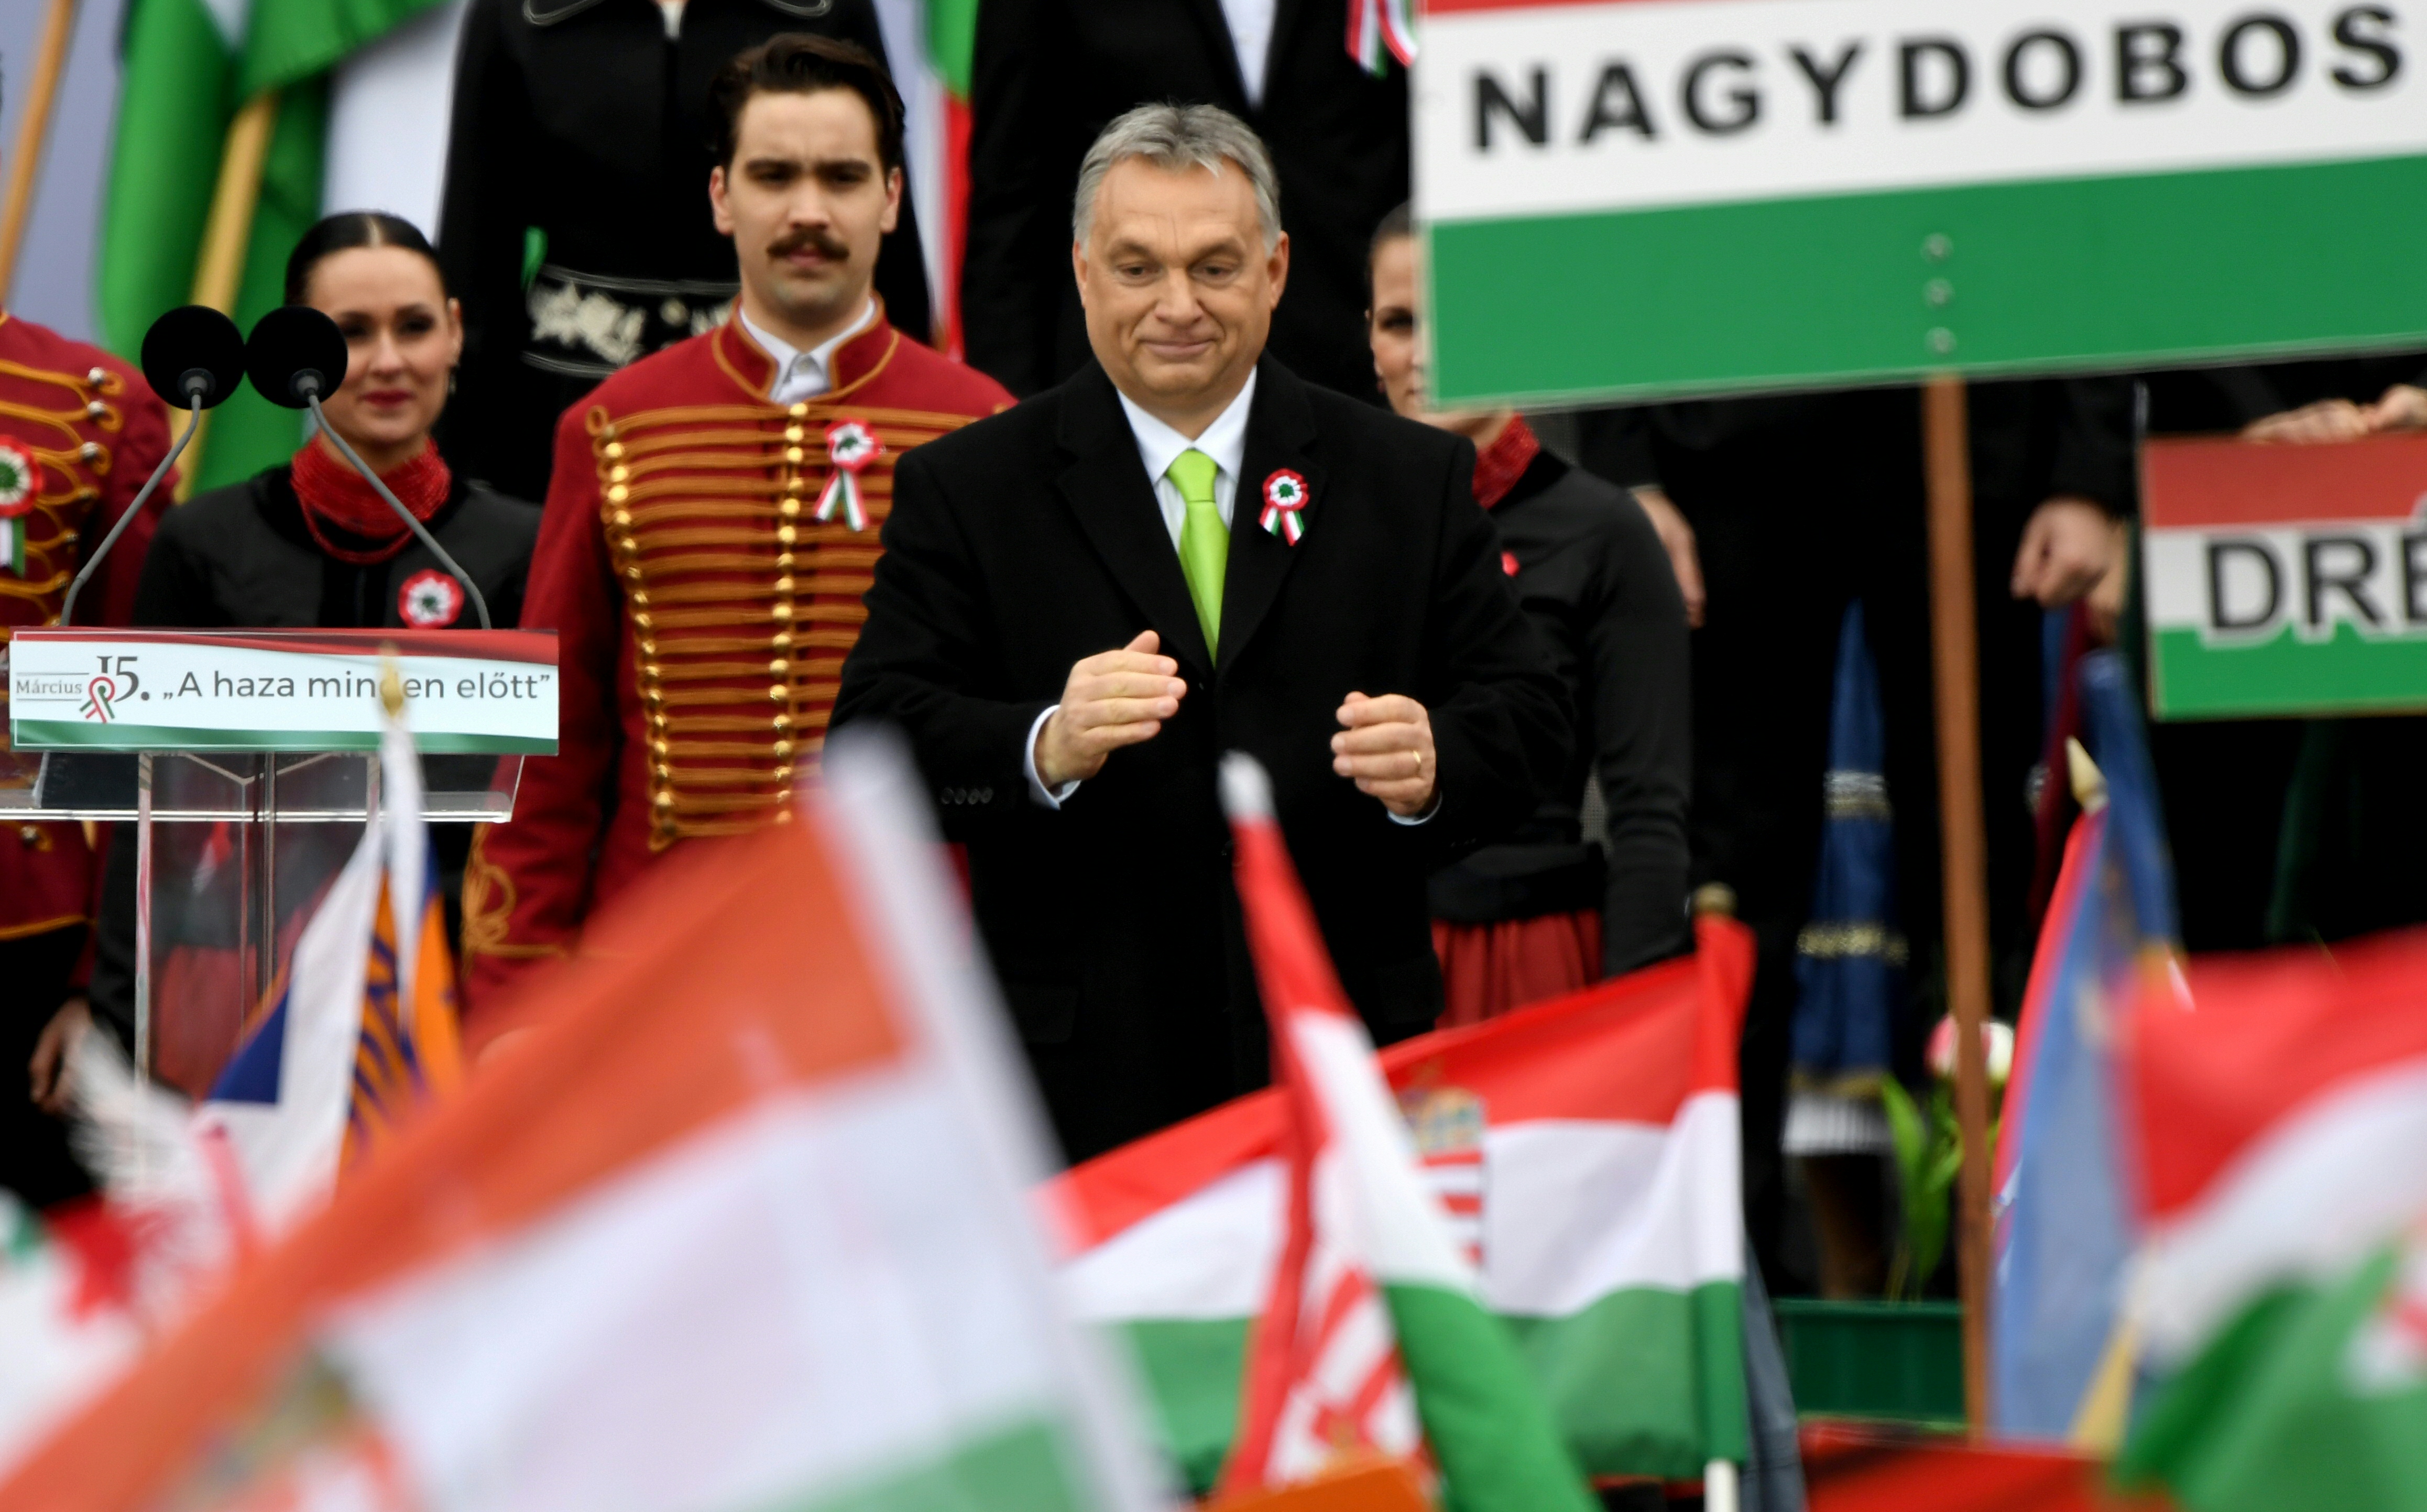 Tíz év alatt Magyarországon nőtt leginkább a megosztottság Európa országai közül